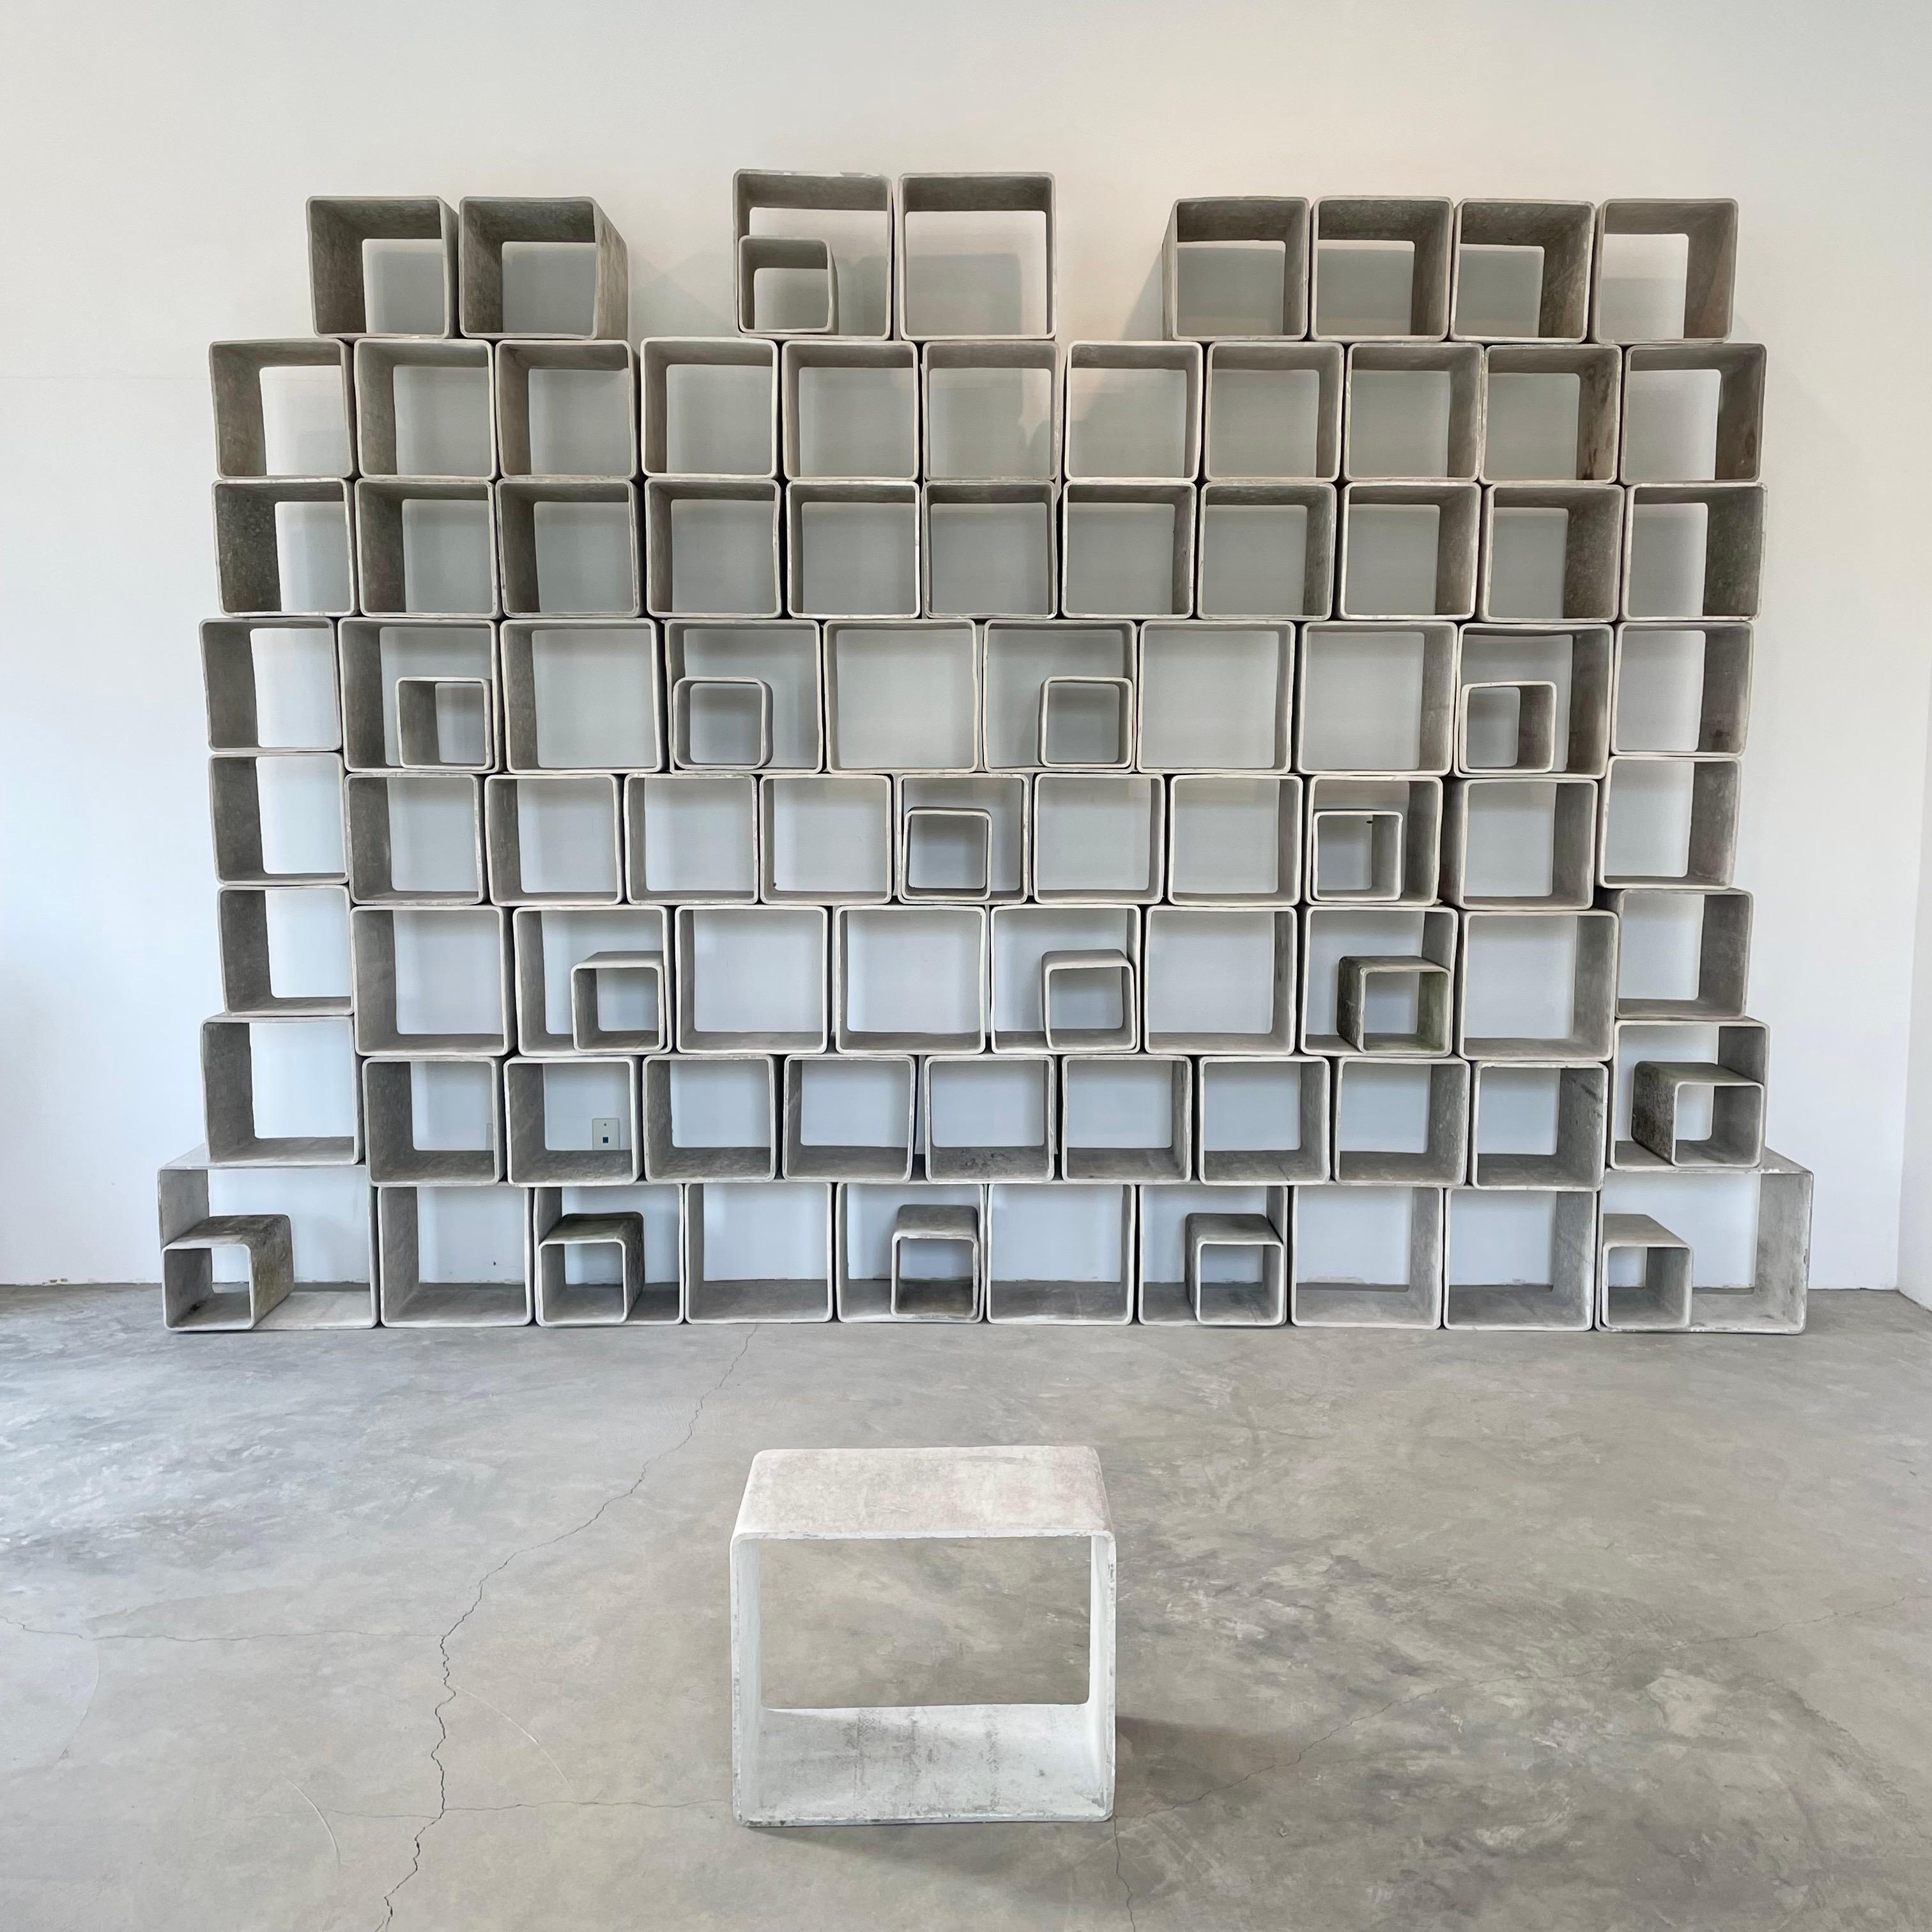 Superbe bibliothèque monumentale en béton de 100 pièces par Willy Guhl. Composé de 4 cubes en béton de tailles différentes, fabriqués à la main. Entièrement modulaire, il peut être aménagé de multiples façons. Couleur originale du béton. Quelques